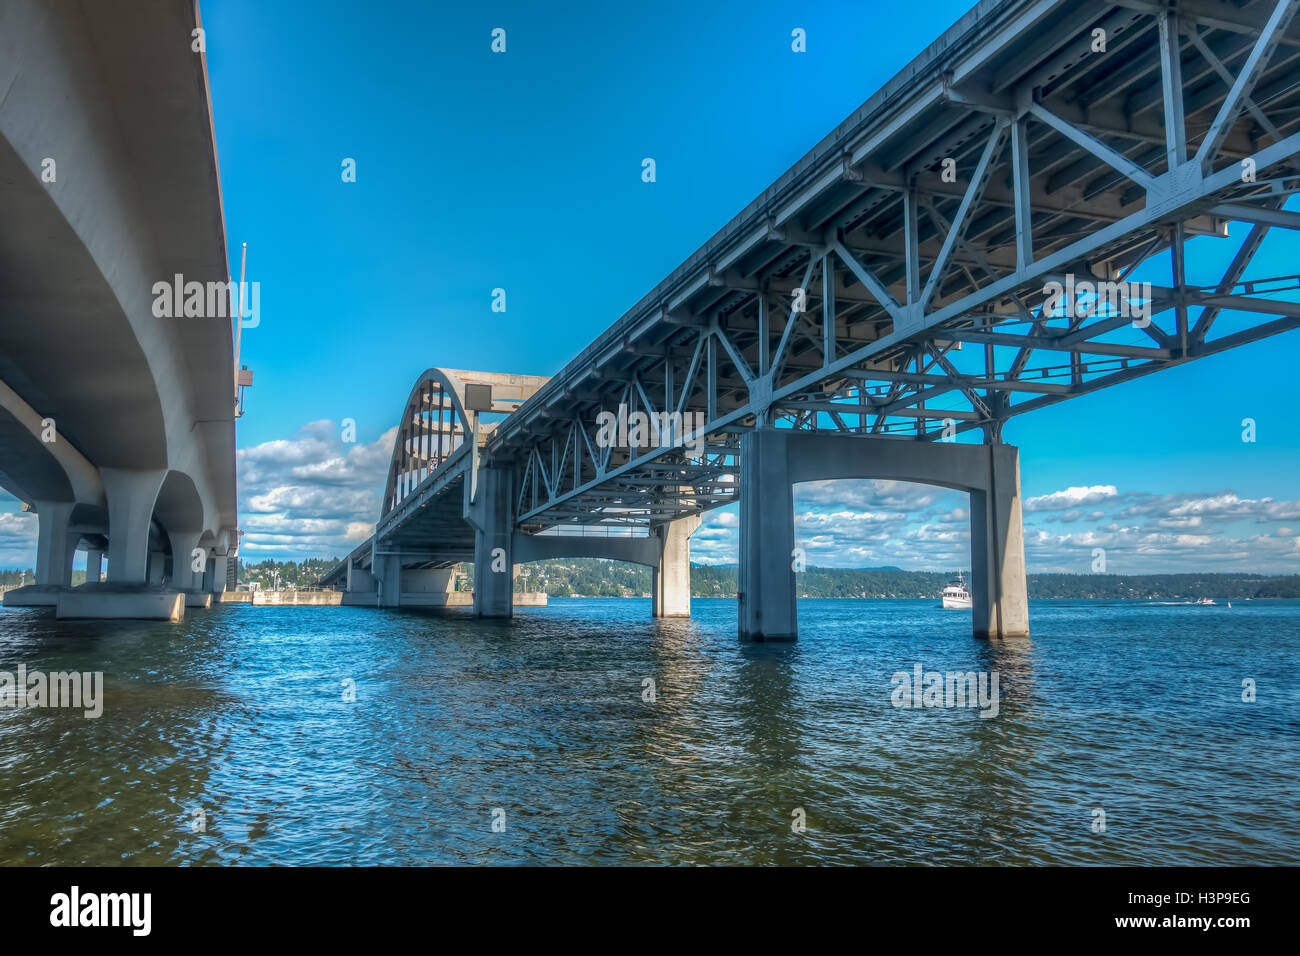 Vue de dessous le pont I-90 à Seattle, Washington. Image HDR. Banque D'Images